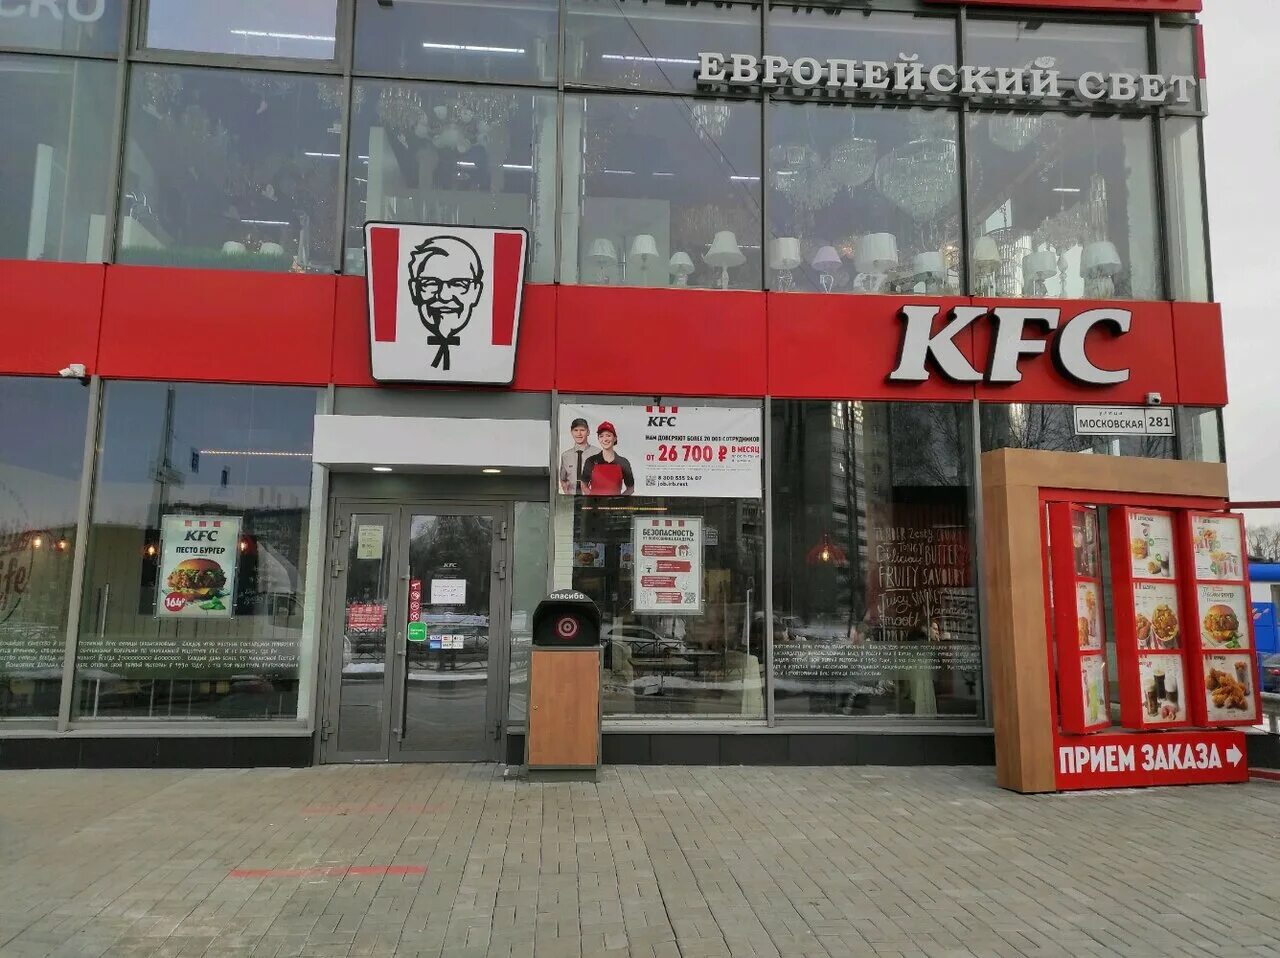 Kfc avto регистрации. KFC авто карта. KFC авто Екатеринбург. Московская 281 Екатеринбург.